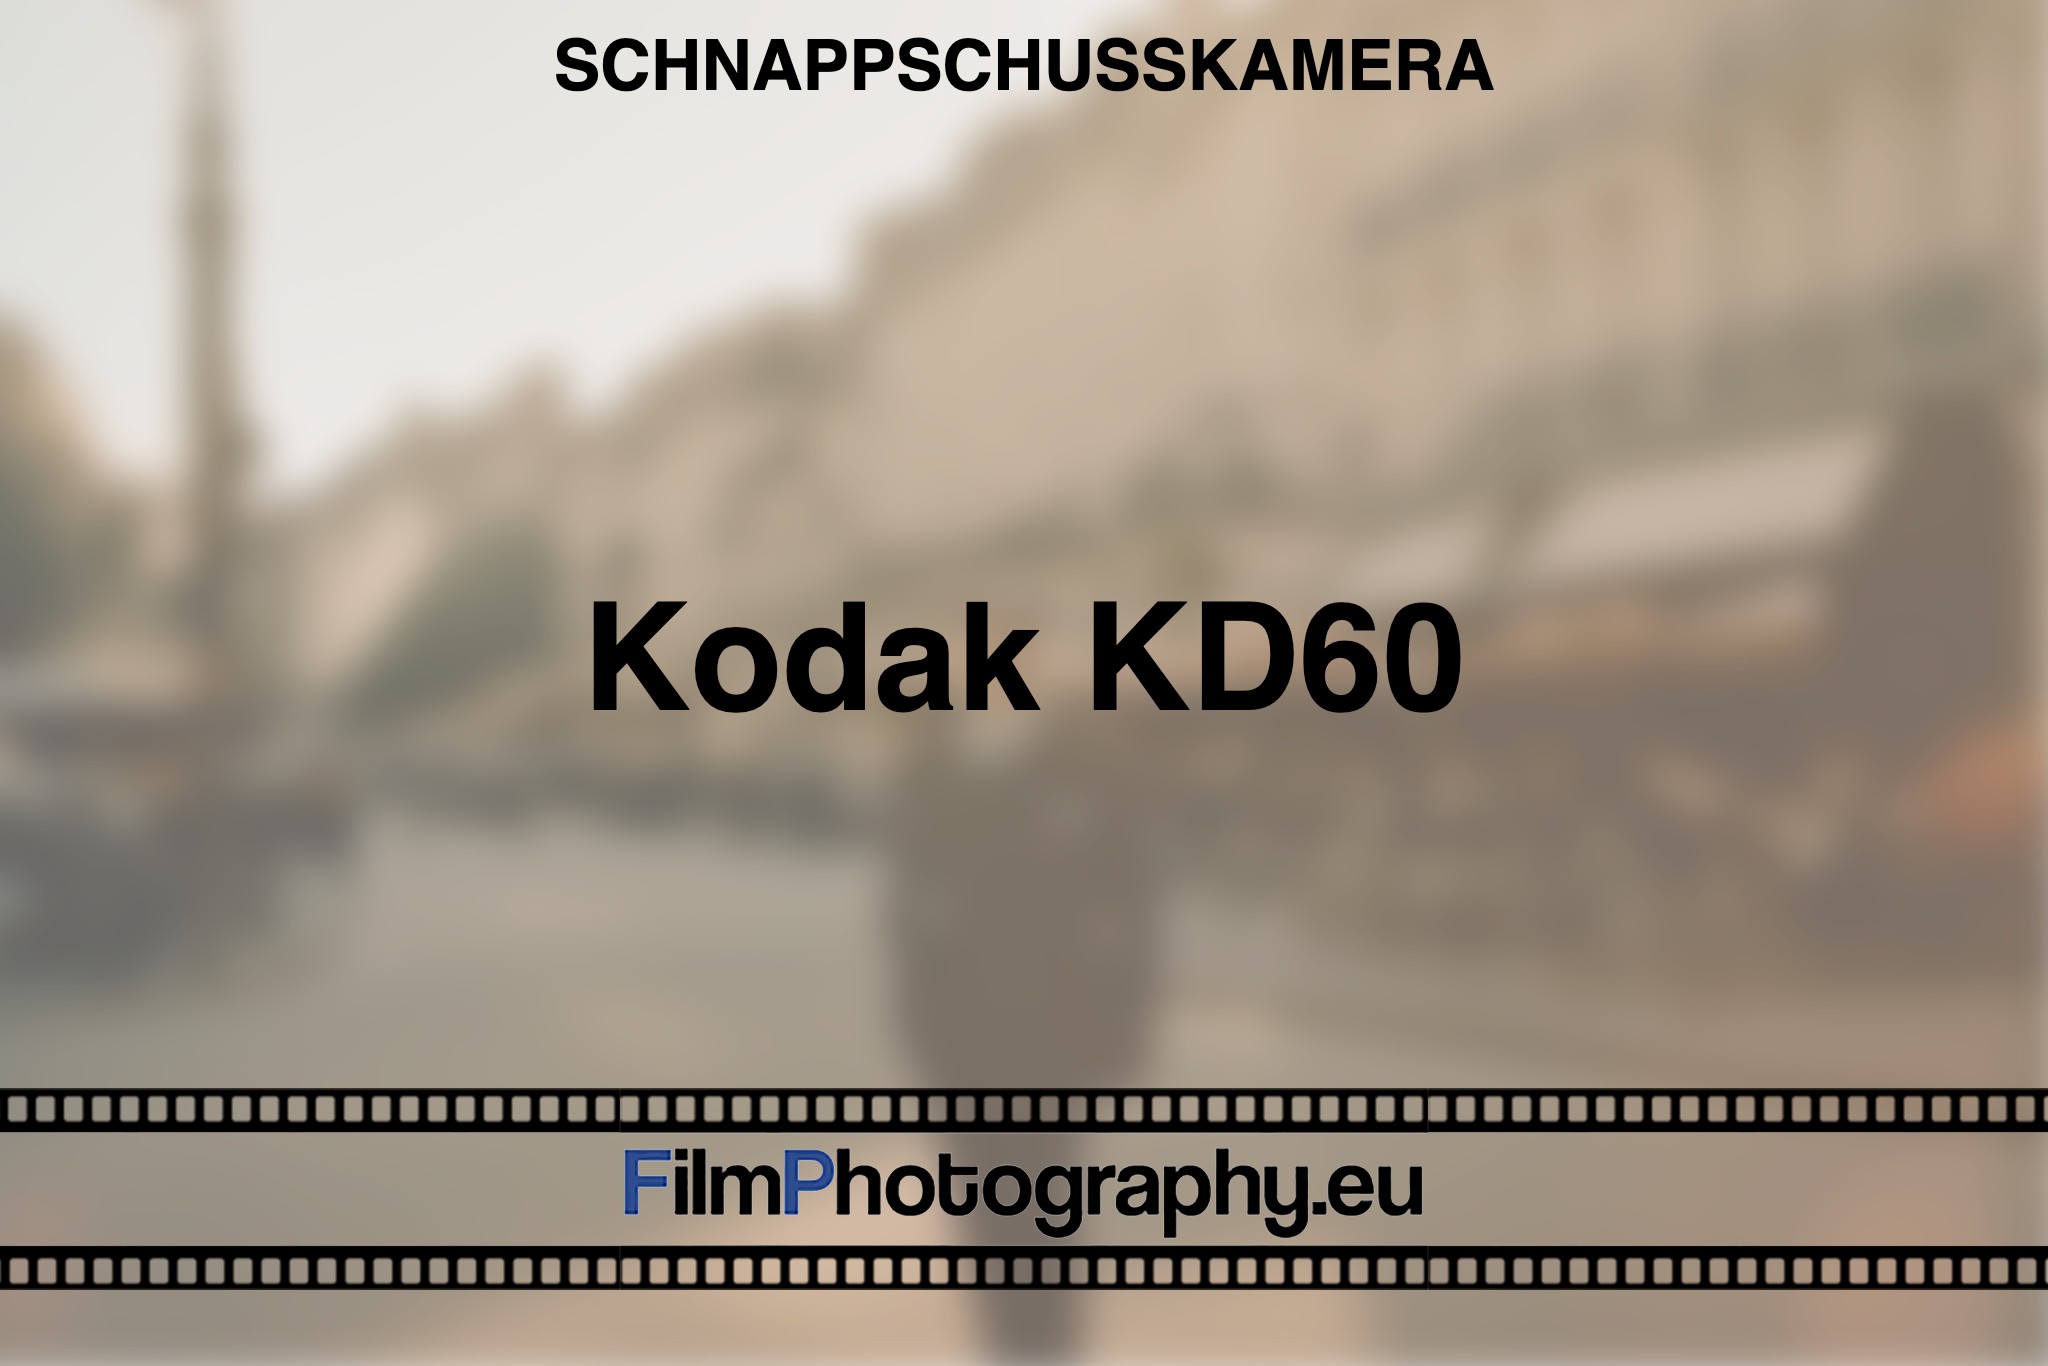 kodak-kd60-schnappschusskamera-bnv